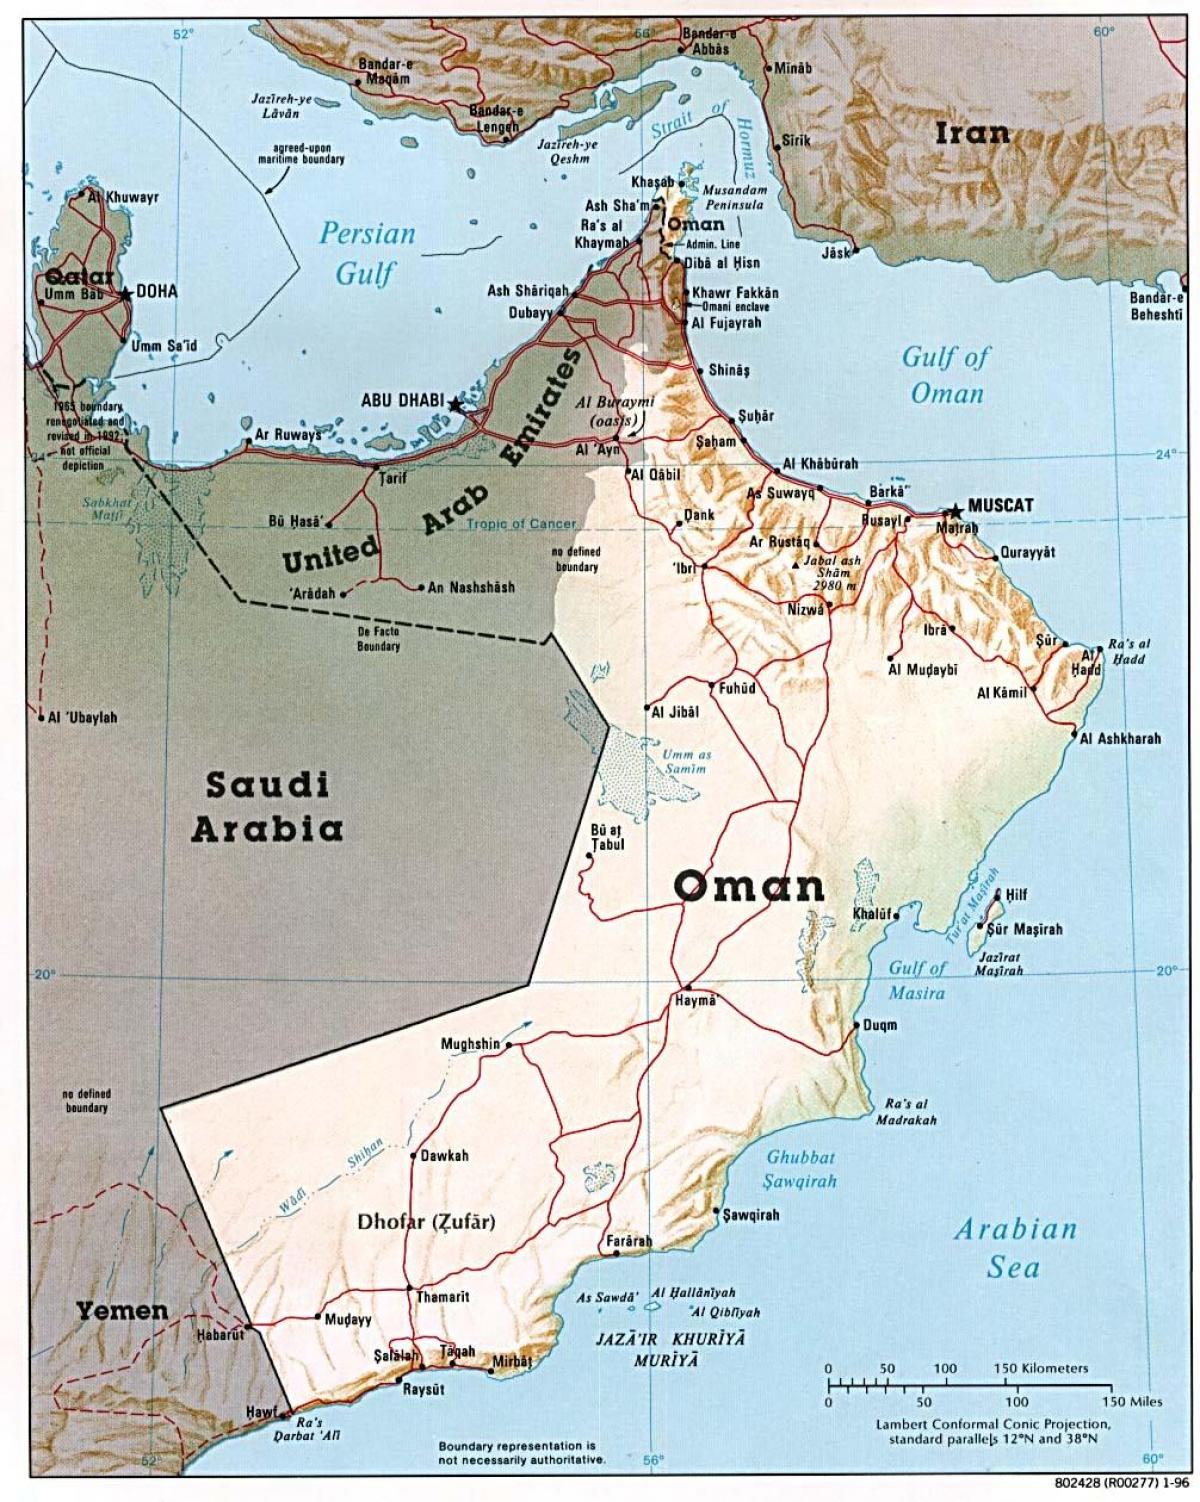 Omã mapa com cidades